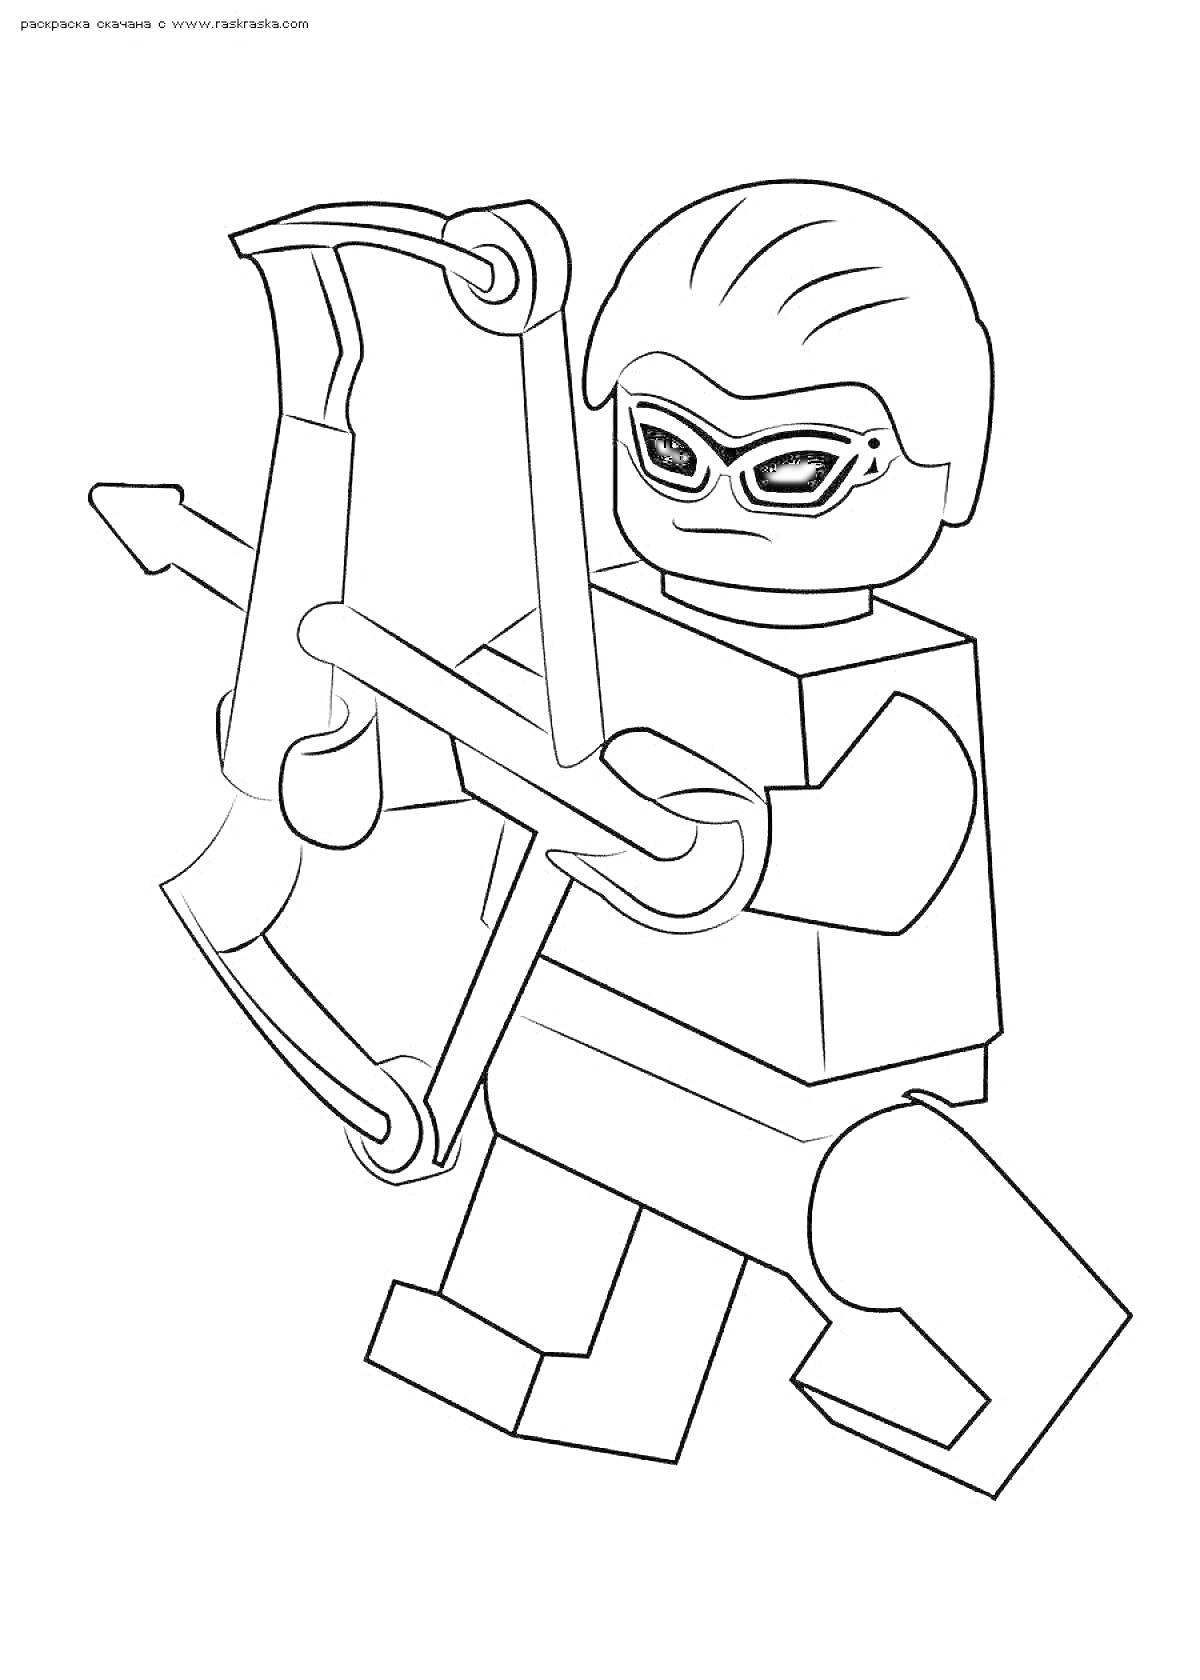 Раскраска Лего персонаж с луком и стрелами в маске и защитных очках